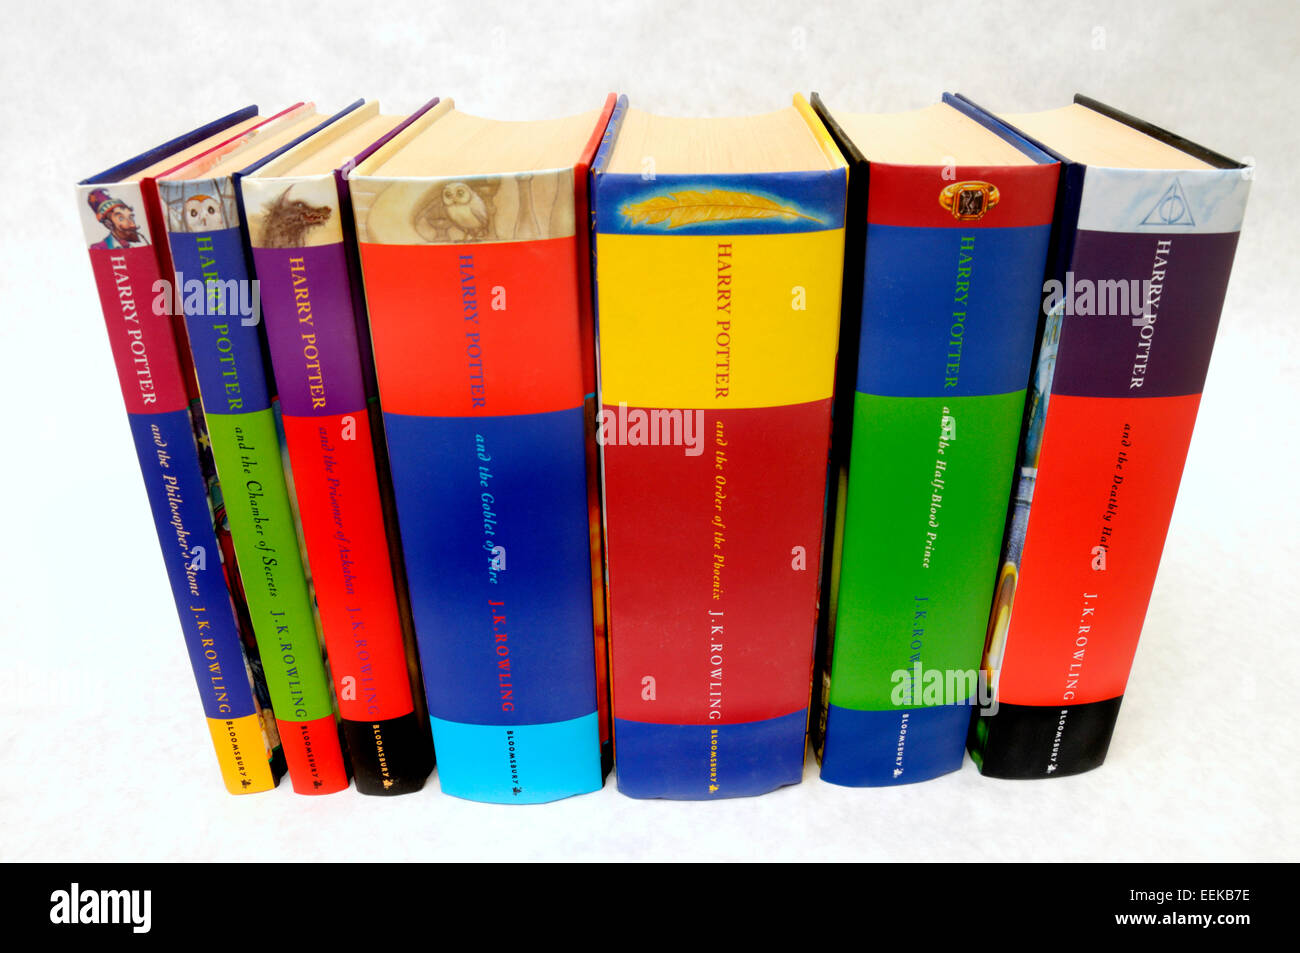 Harry Potter books 1-7 in hardback Stock Photo